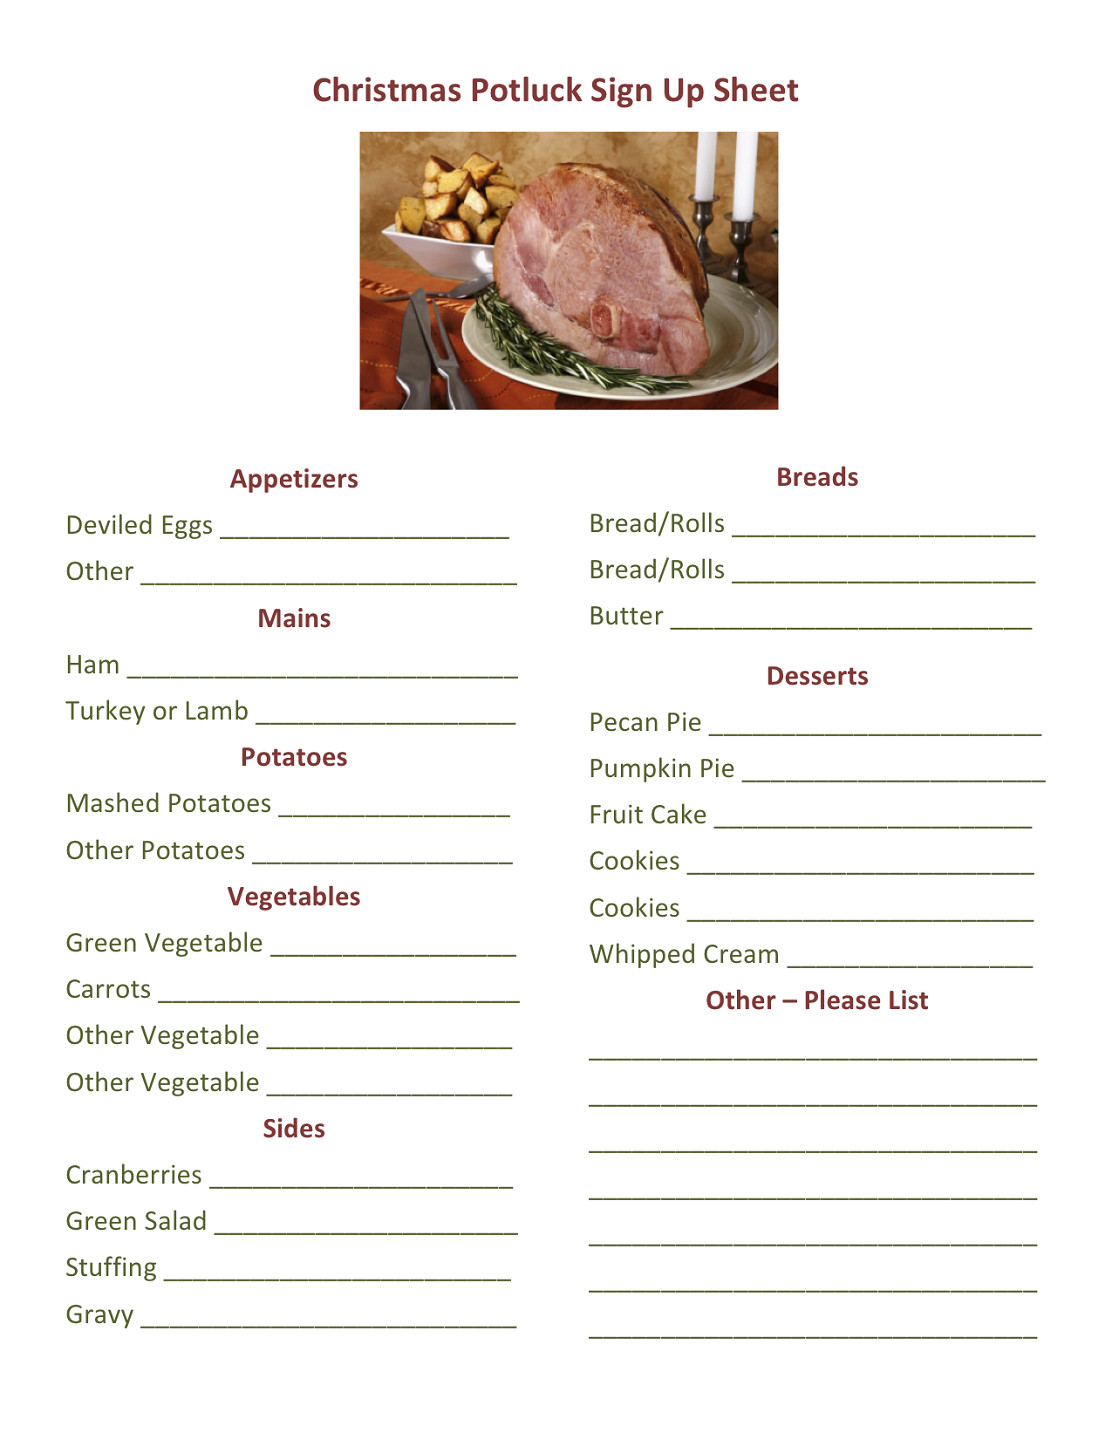 Holiday Potluck Signup Sheet Potluck Dinner Sign Up Sheet Printable